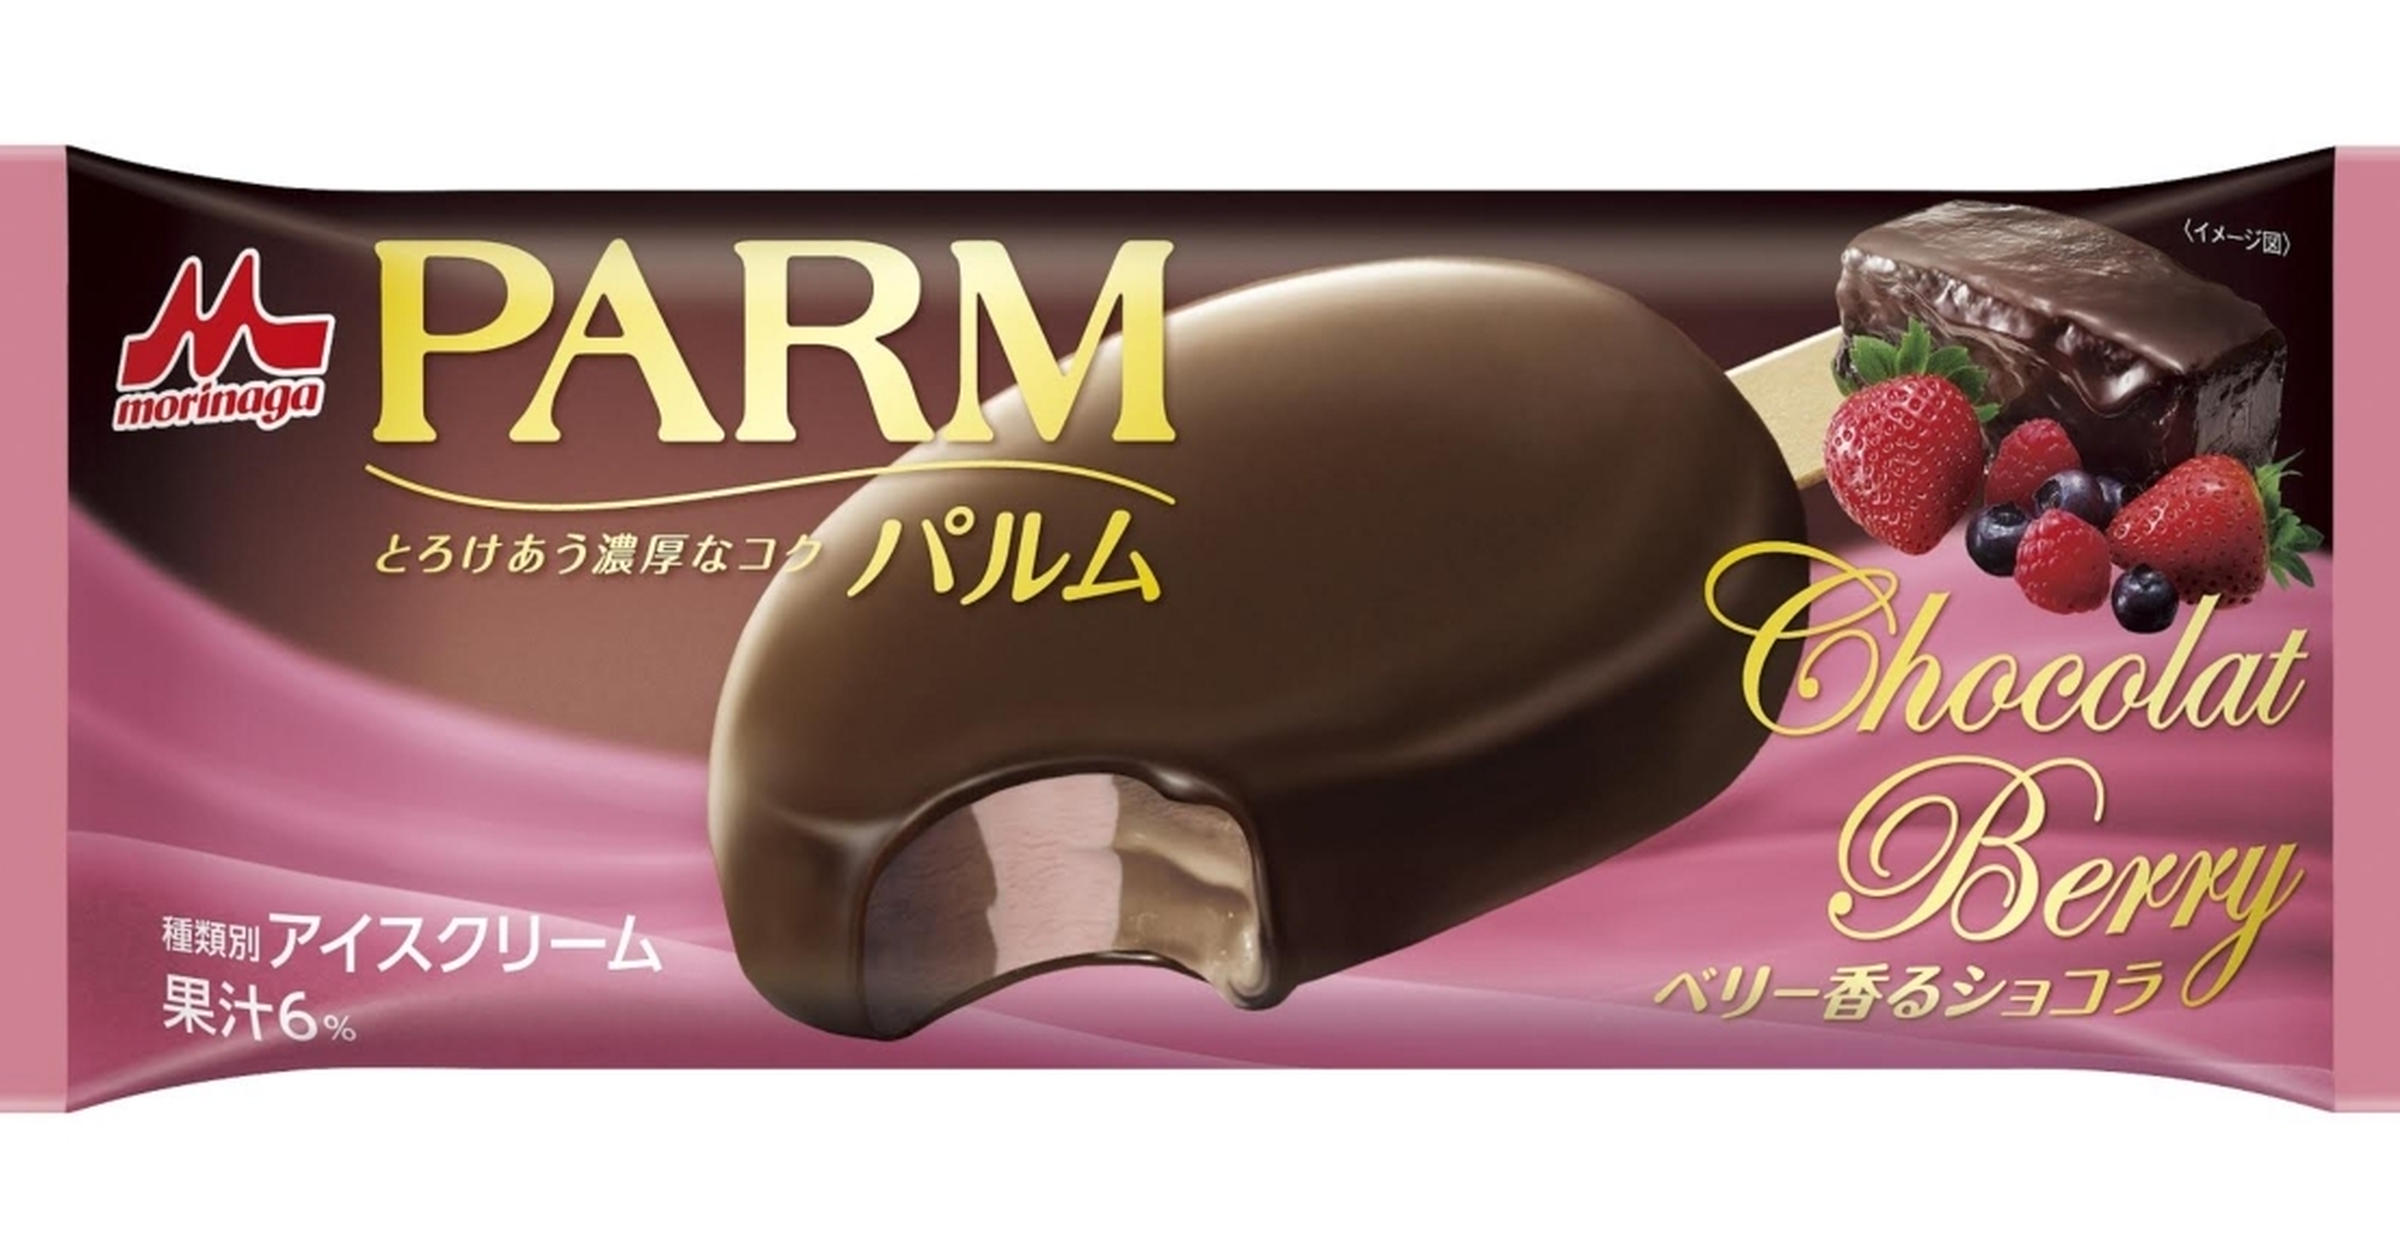 新しいパルムは甘酸っぱく芳醇な ベリー香るショコラ 期間限定で発売 トクバイニュース